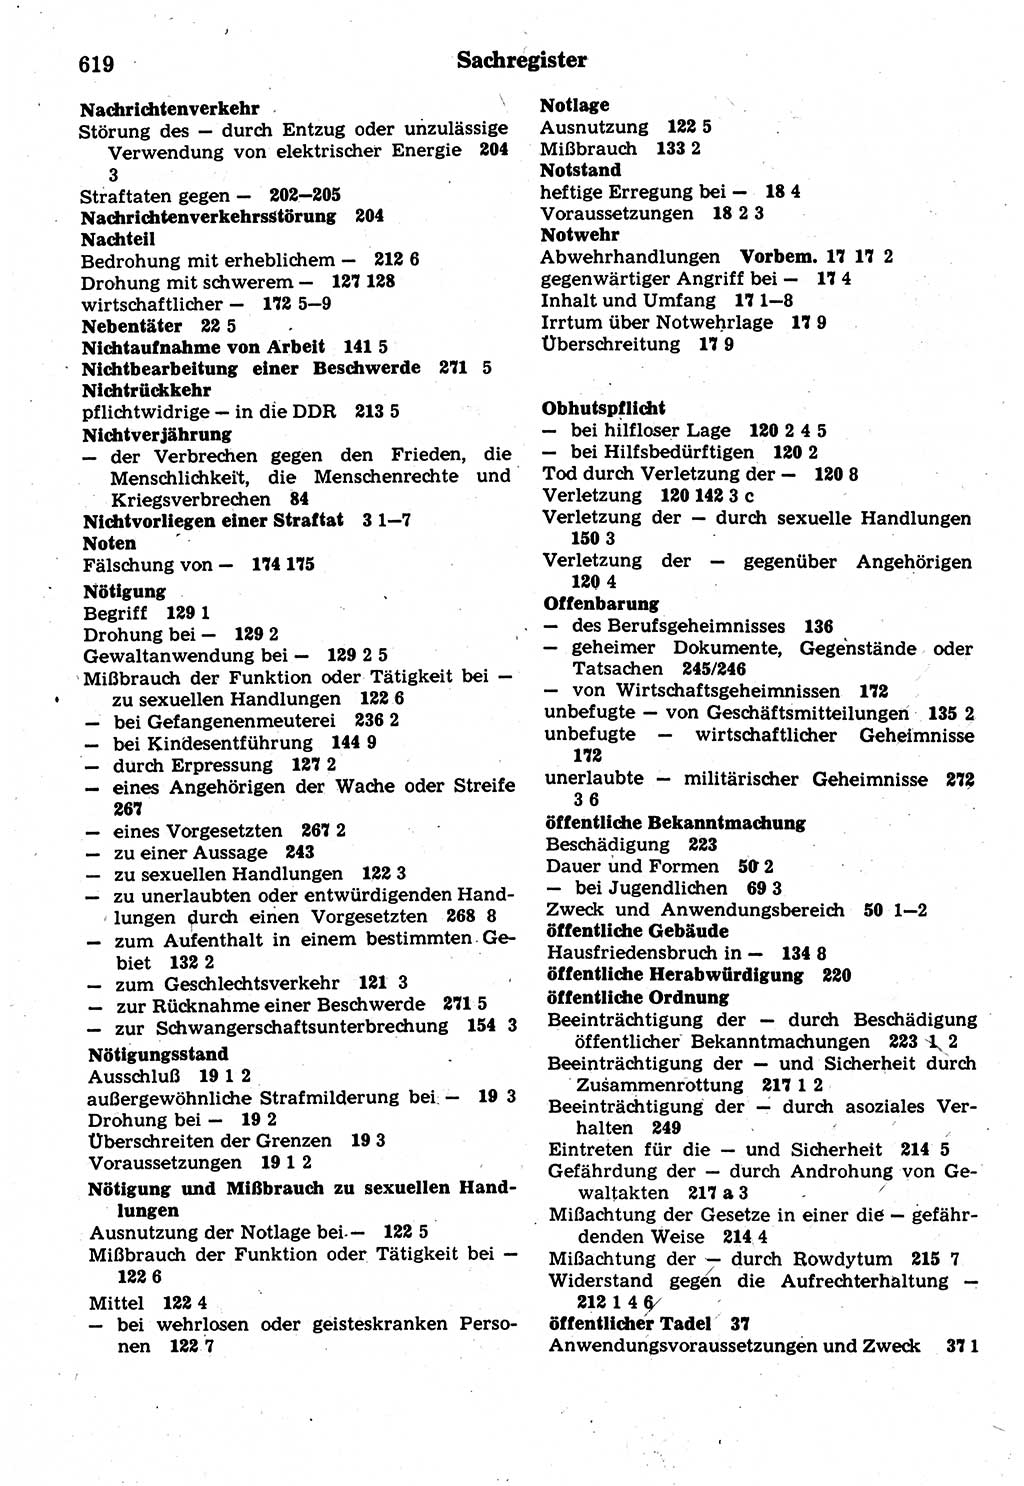 Strafrecht der Deutschen Demokratischen Republik (DDR), Kommentar zum Strafgesetzbuch (StGB) 1987, Seite 619 (Strafr. DDR Komm. StGB 1987, S. 619)